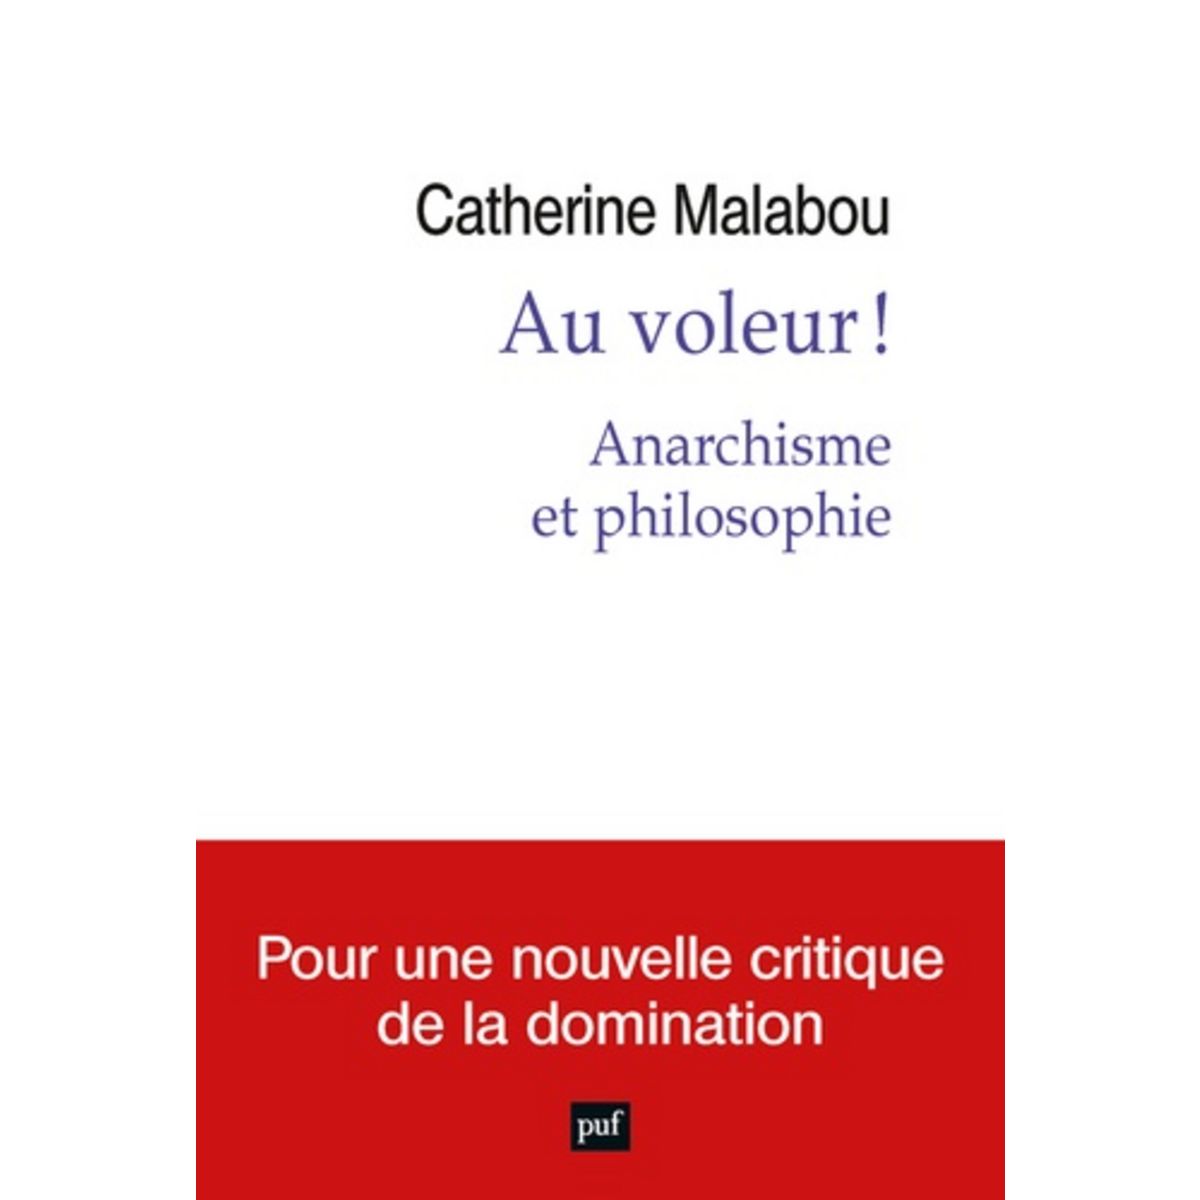  AU VOLEUR ! ANARCHISME ET PHILOSOPHIE, Malabou Catherine